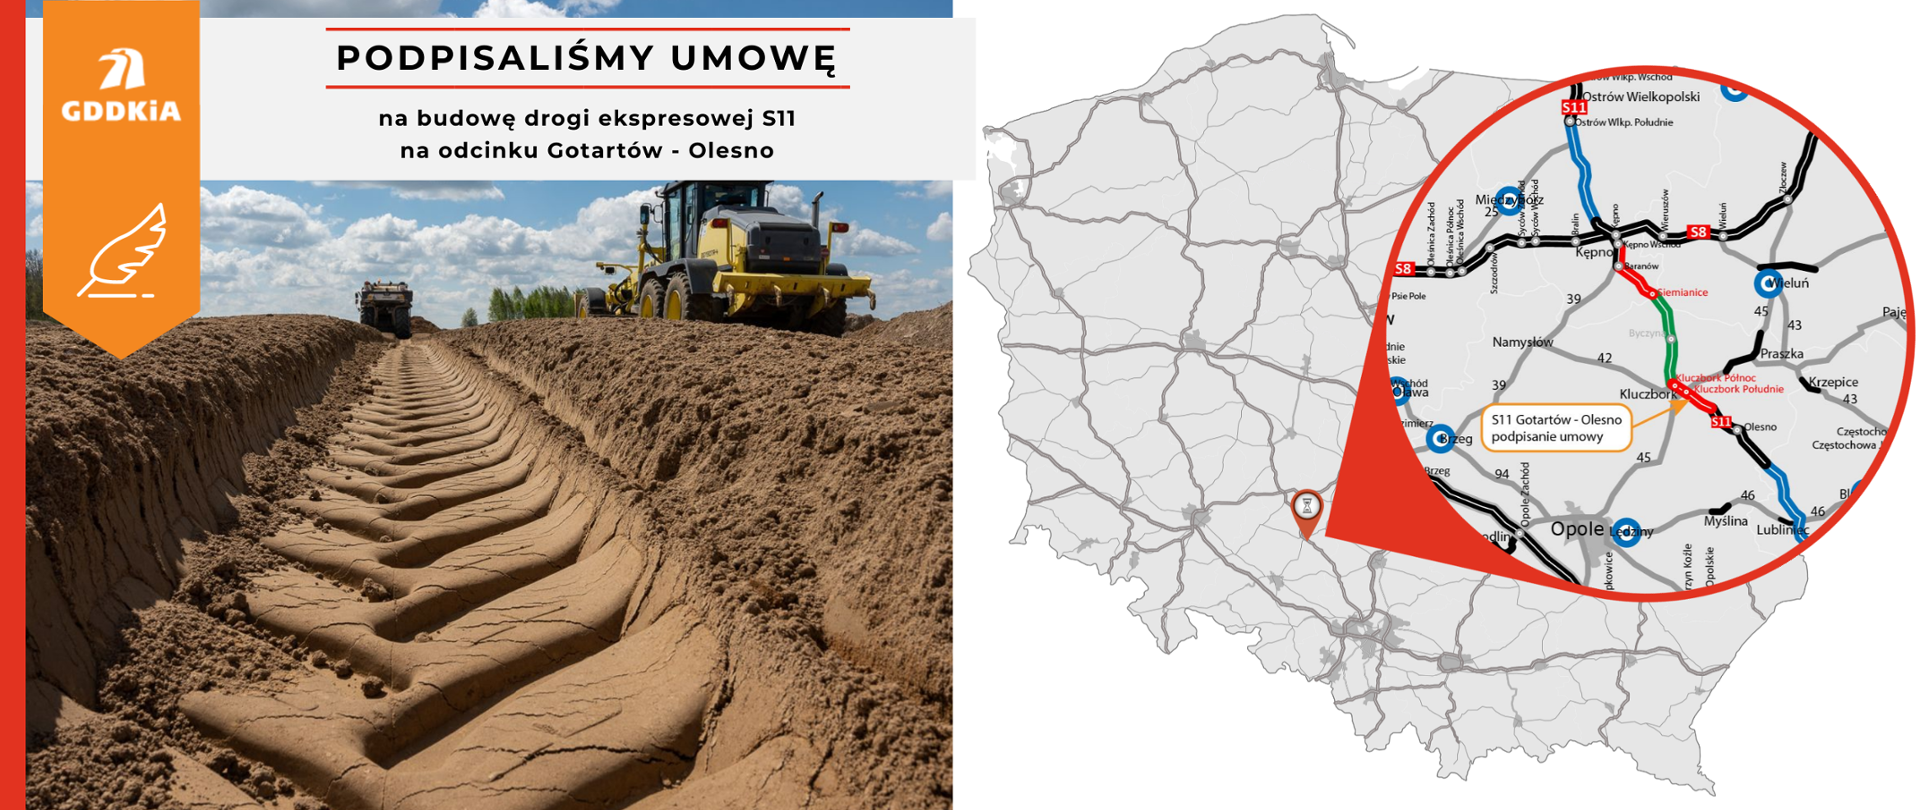 Infografika informująca o podpisaniu umowy na realizację drogi ekspresowej S11 na odcinki Gotartów - Olesno. Po prawej mapa Polski z zaznaczonym odcinkiem. Po lewej zdjęcie robót budowlanych. Ślad w ziemi zostawiony przez przejeżdżający sprzęt budowlany.